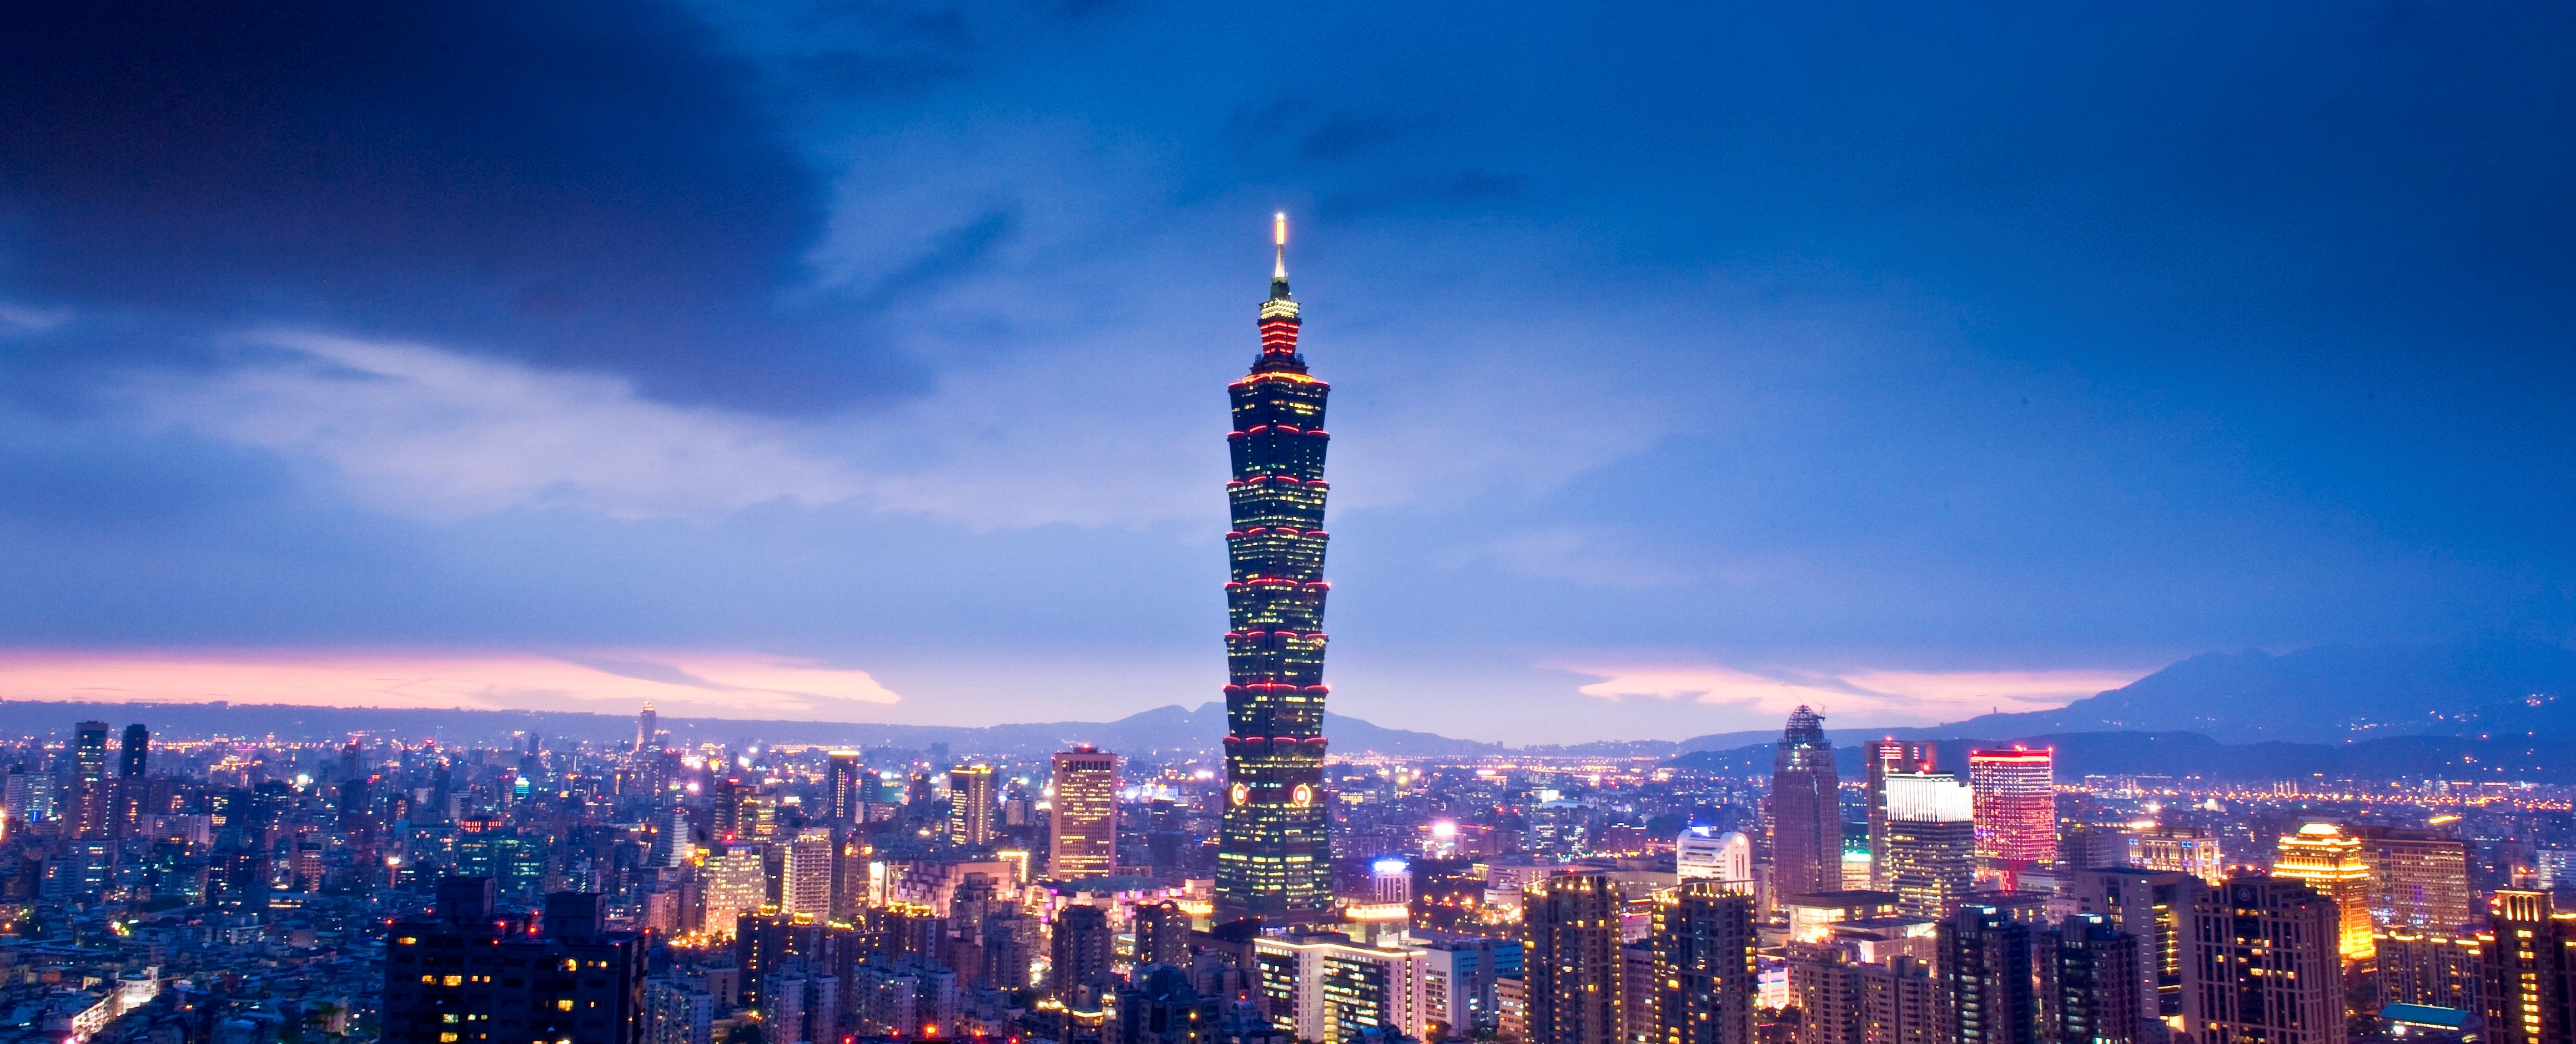 而台北101是台湾的地标性建筑之一,站在大楼第89层的观景台上,饱览全